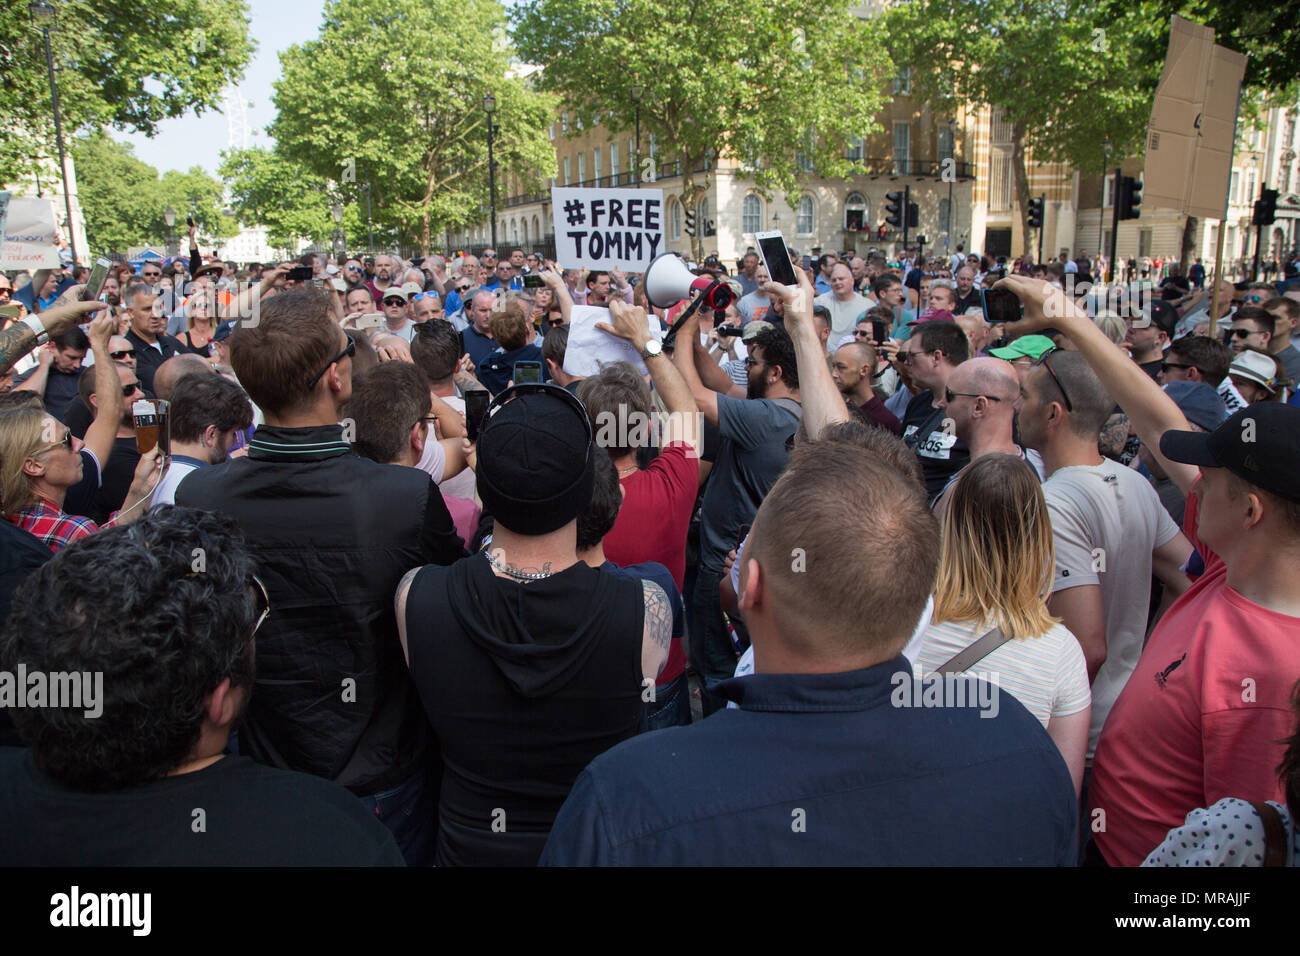 London UK 26 mai 2018 les partisans d'extrême droite manifestation devant Downing Street exigeant la libération de Tommy Robinson, qui a été arrêté pour violation de la paix à l'extérieur d'une maison de la cour à Leeds le 25 mai sur la suspicion de violation de la paix. Banque D'Images